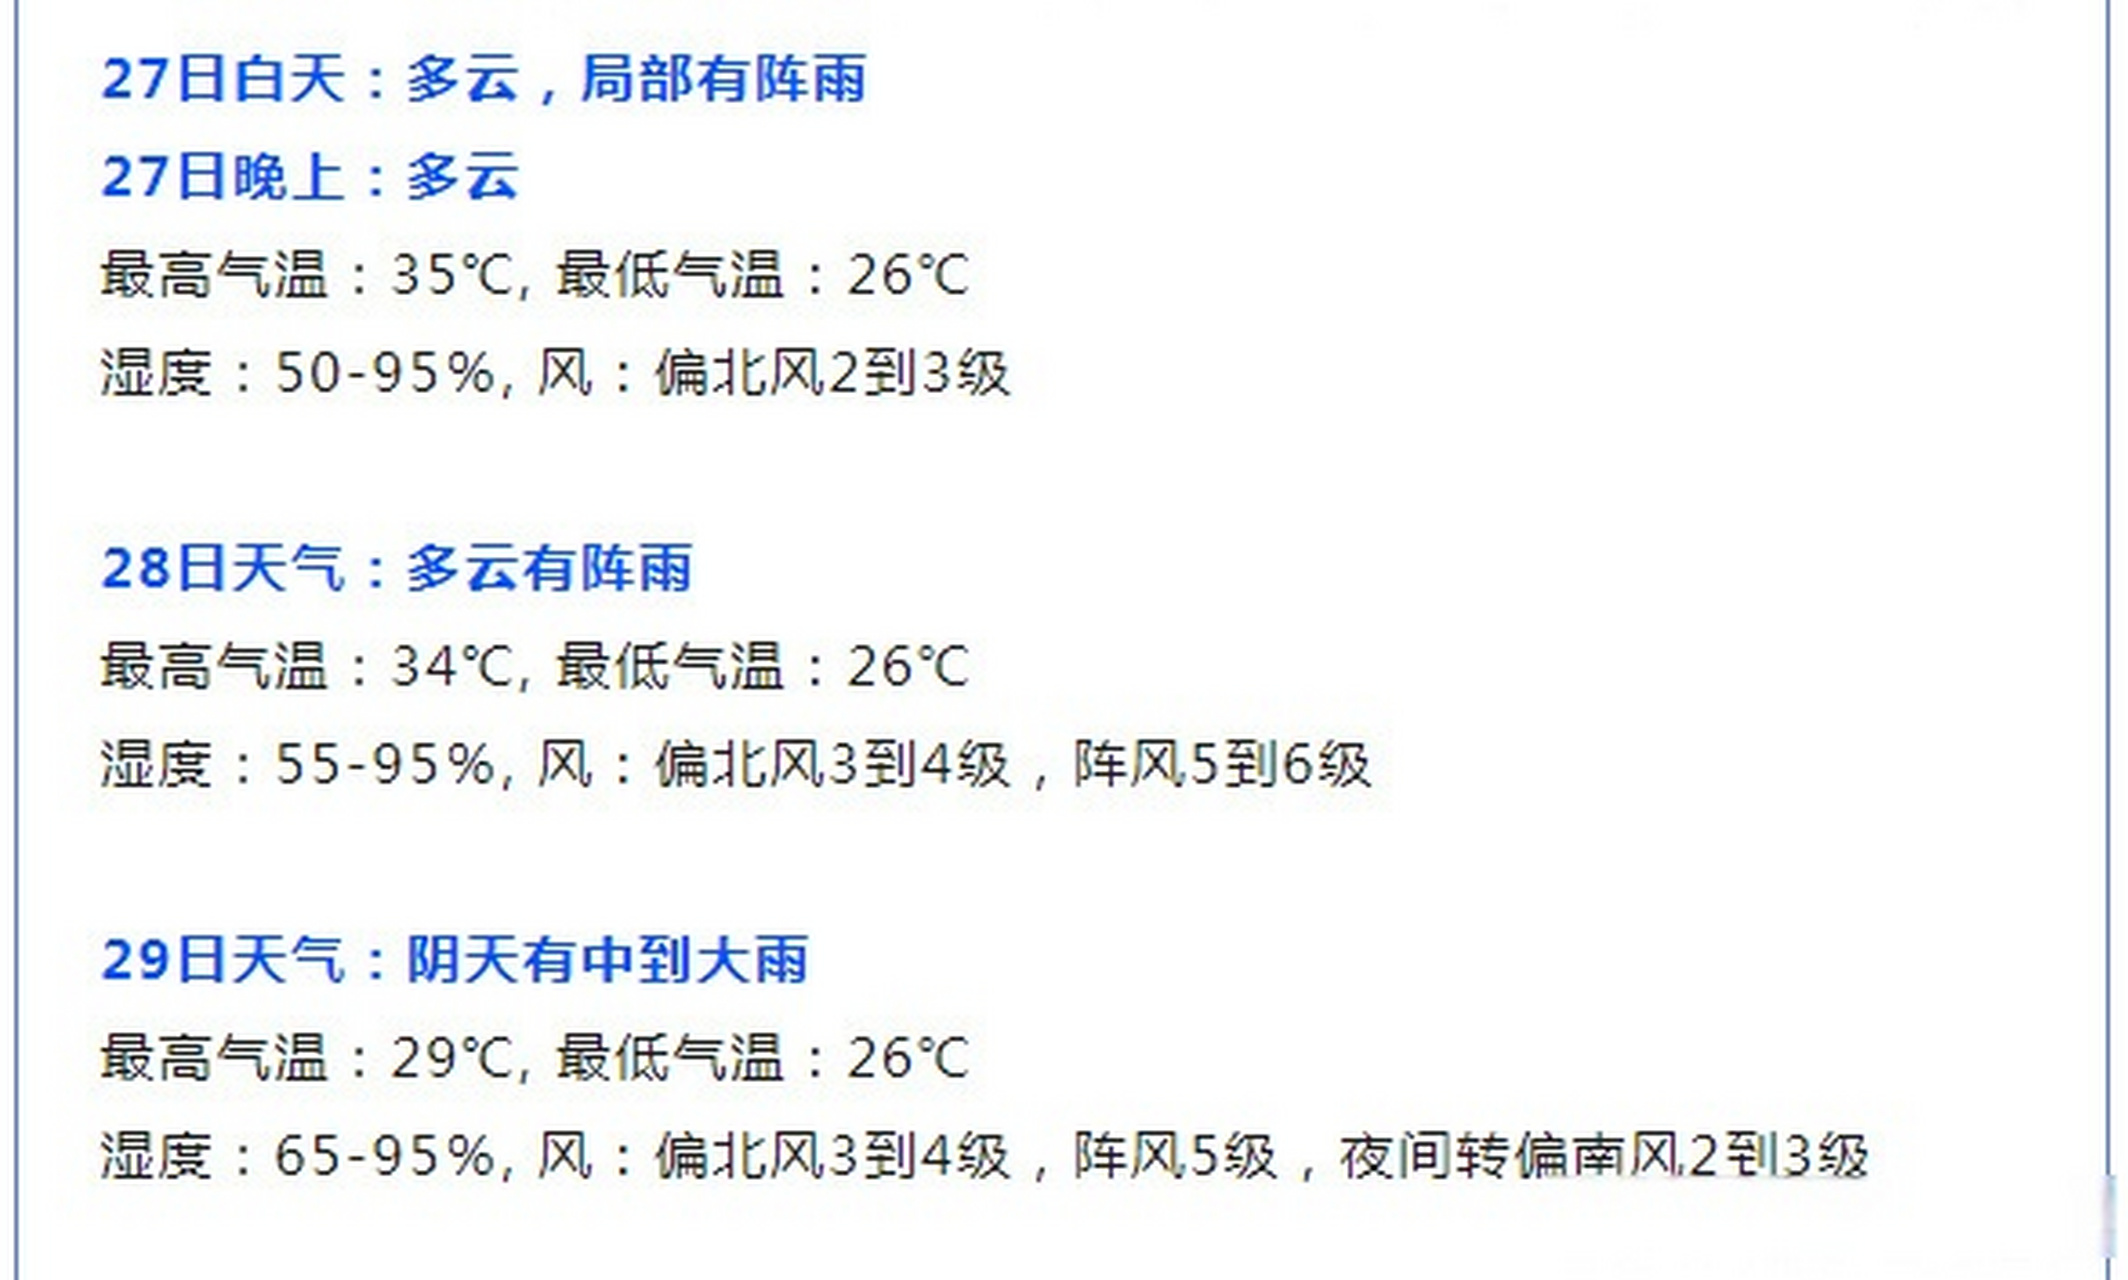 武汉市一周天气预报图片